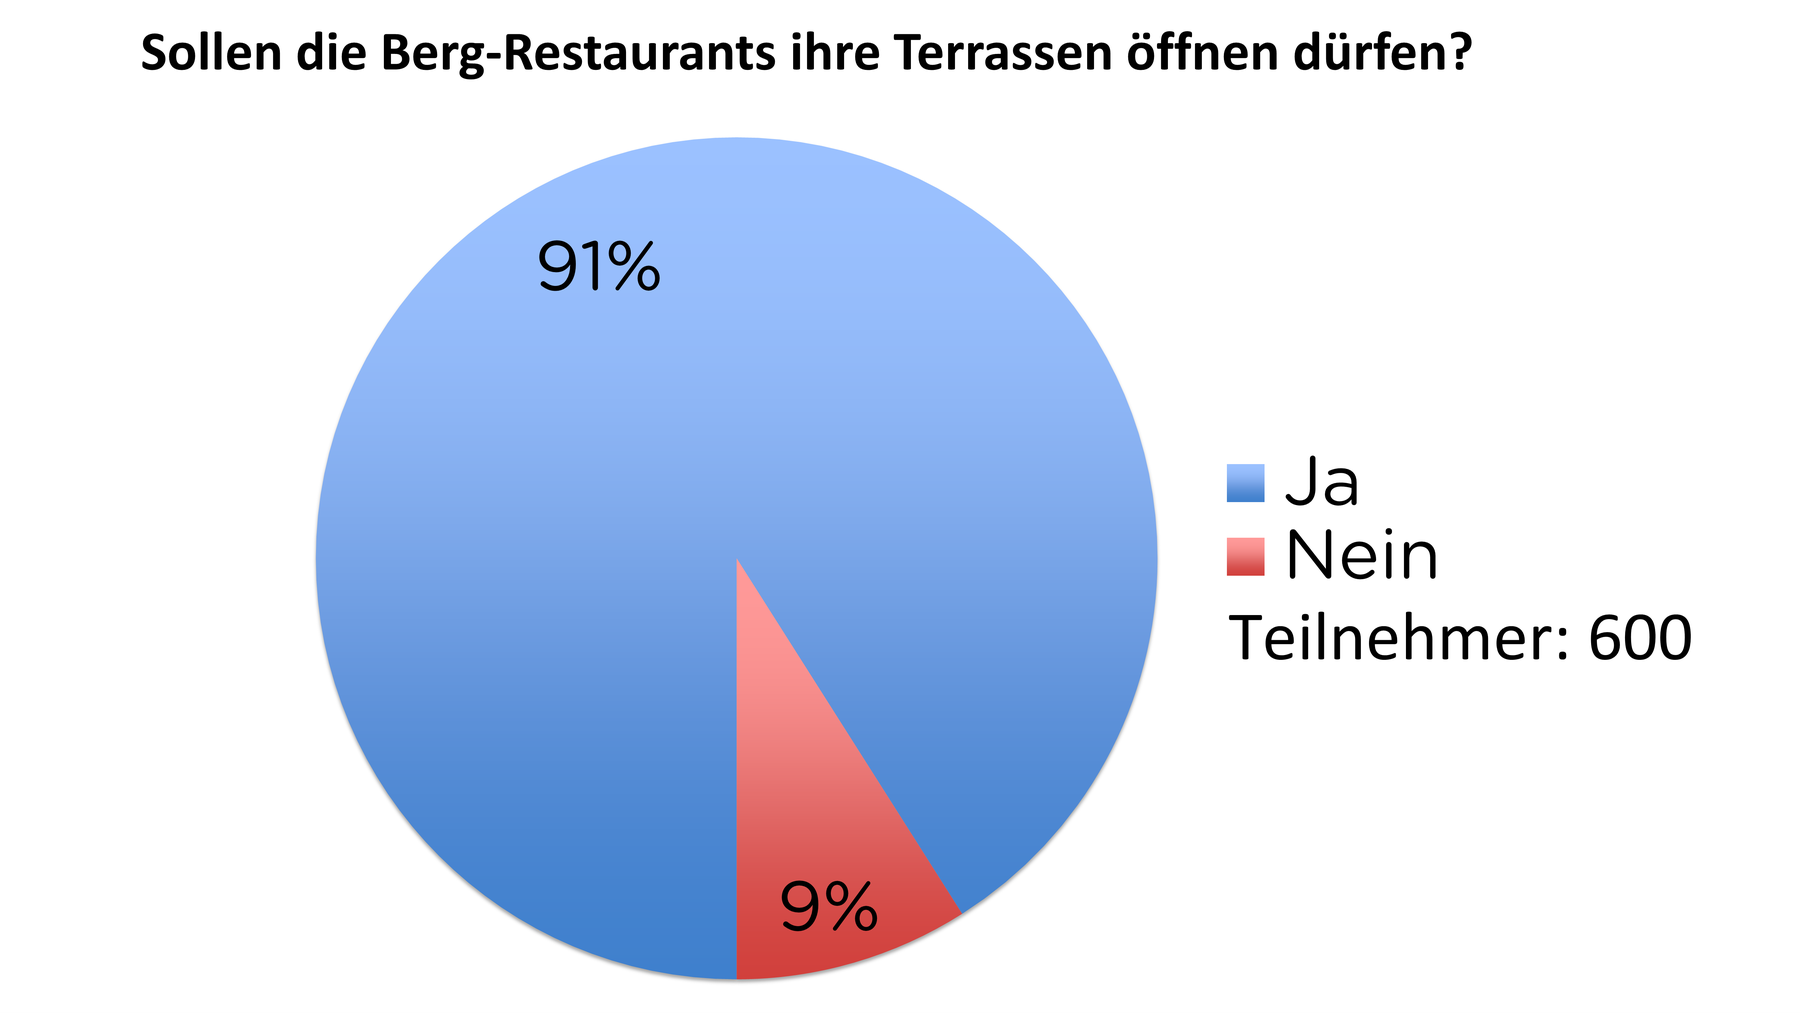 Sollen die Berg-Restaurants ihre Terrassen öffnen dürfen?